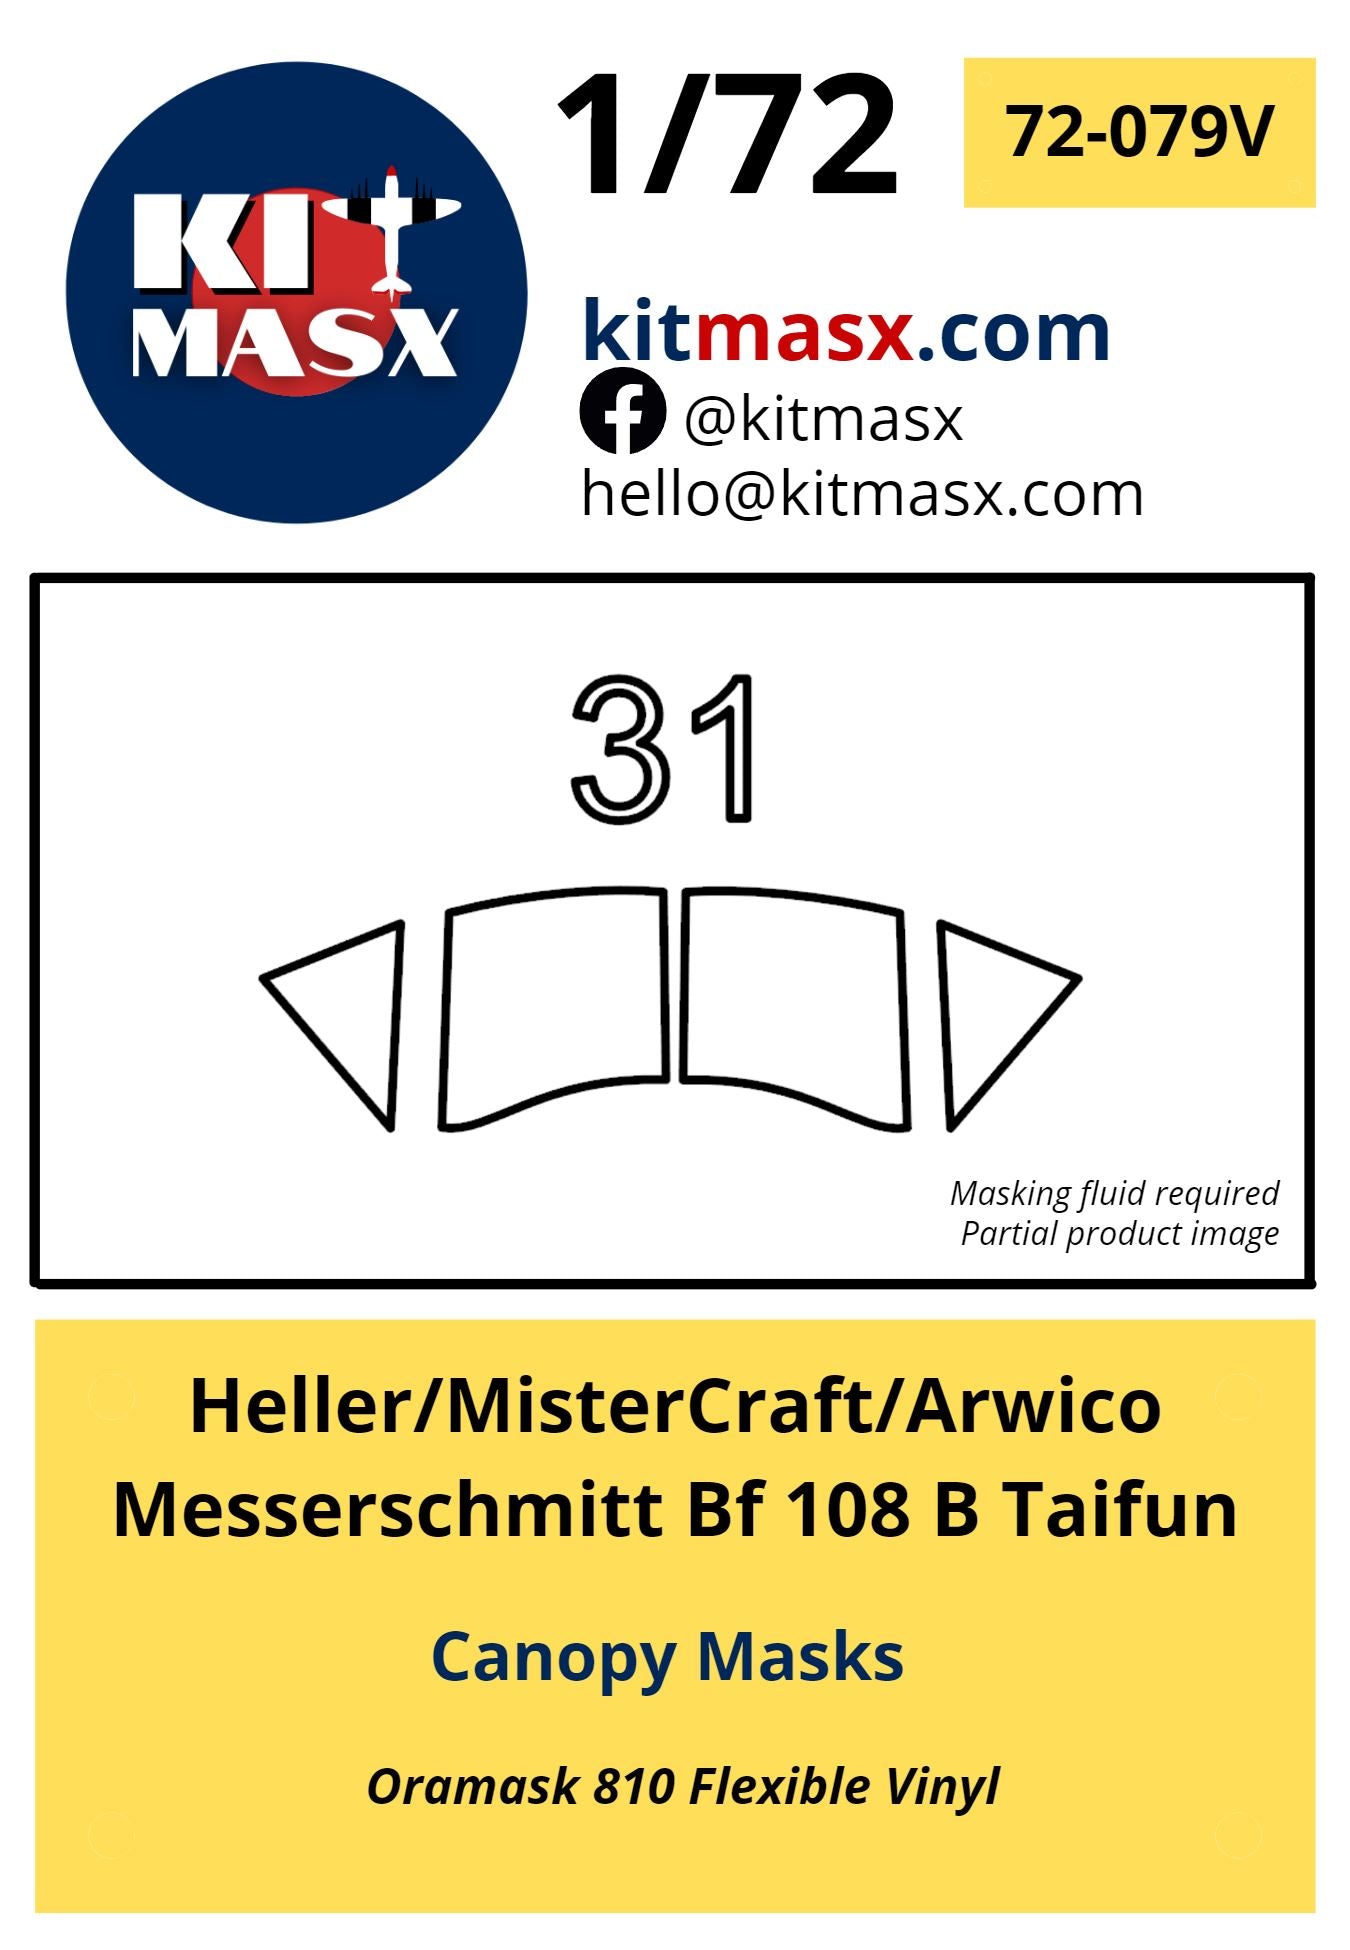 Heller/MisterCraft/Arwico Messerschmitt Bf 108 B Taifun Canopy Masks Kit Masx 